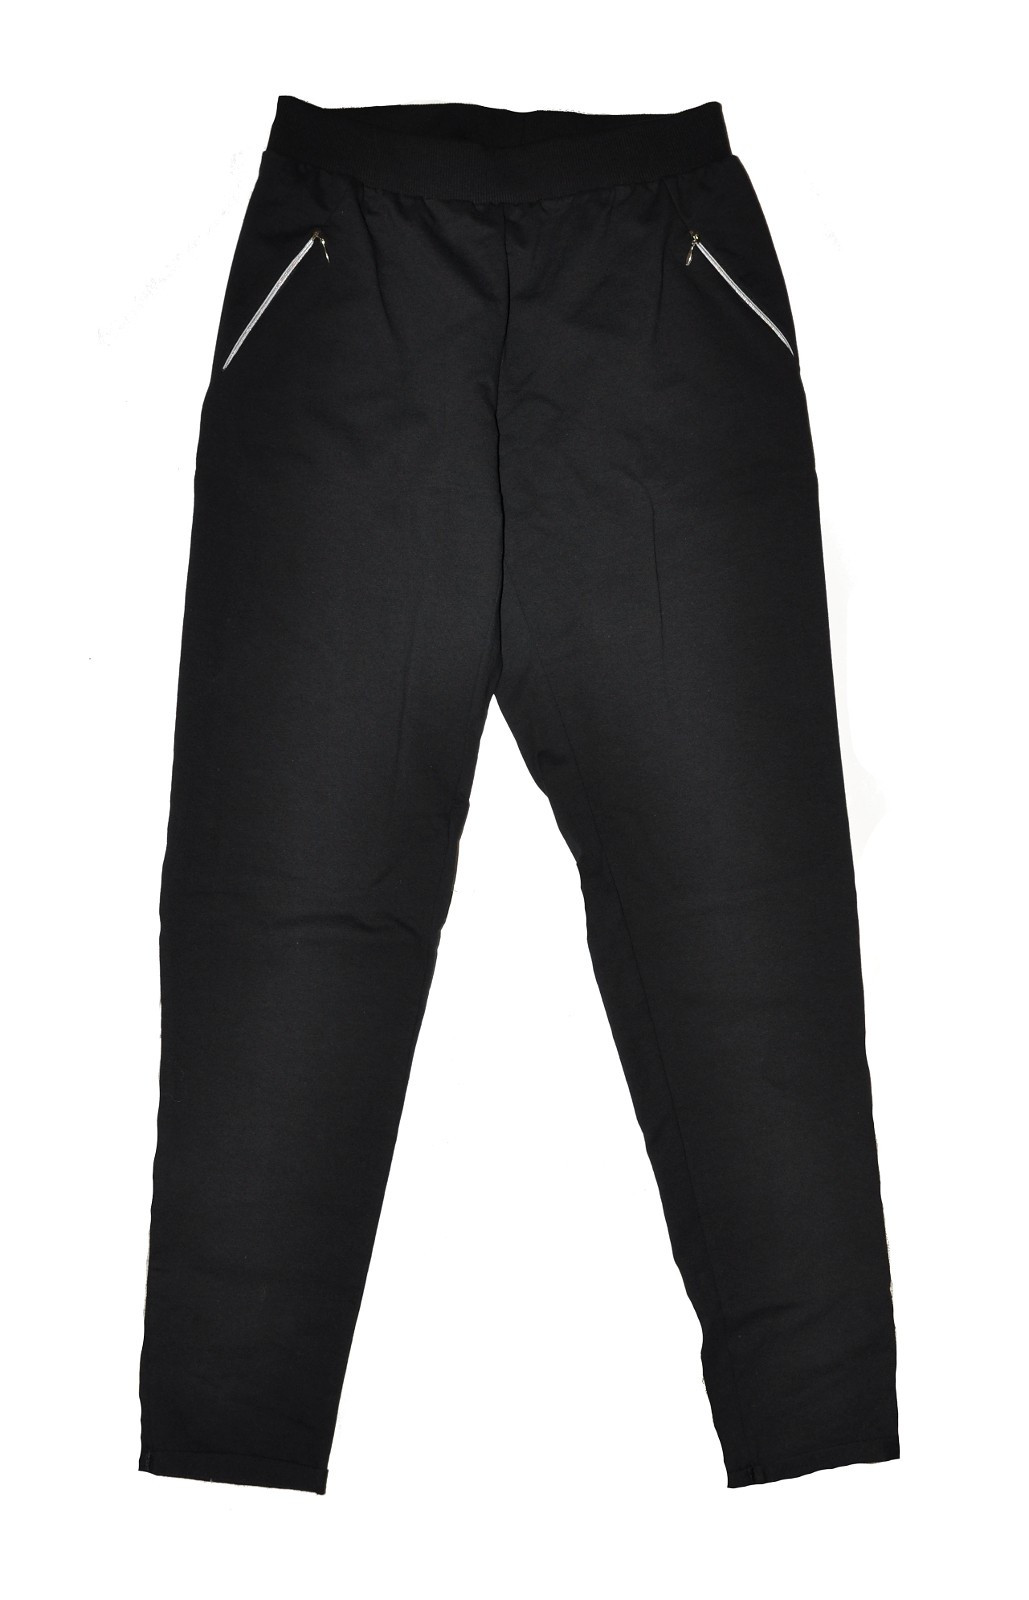 Dámské kalhoty De Lafense 604 Just černá XL